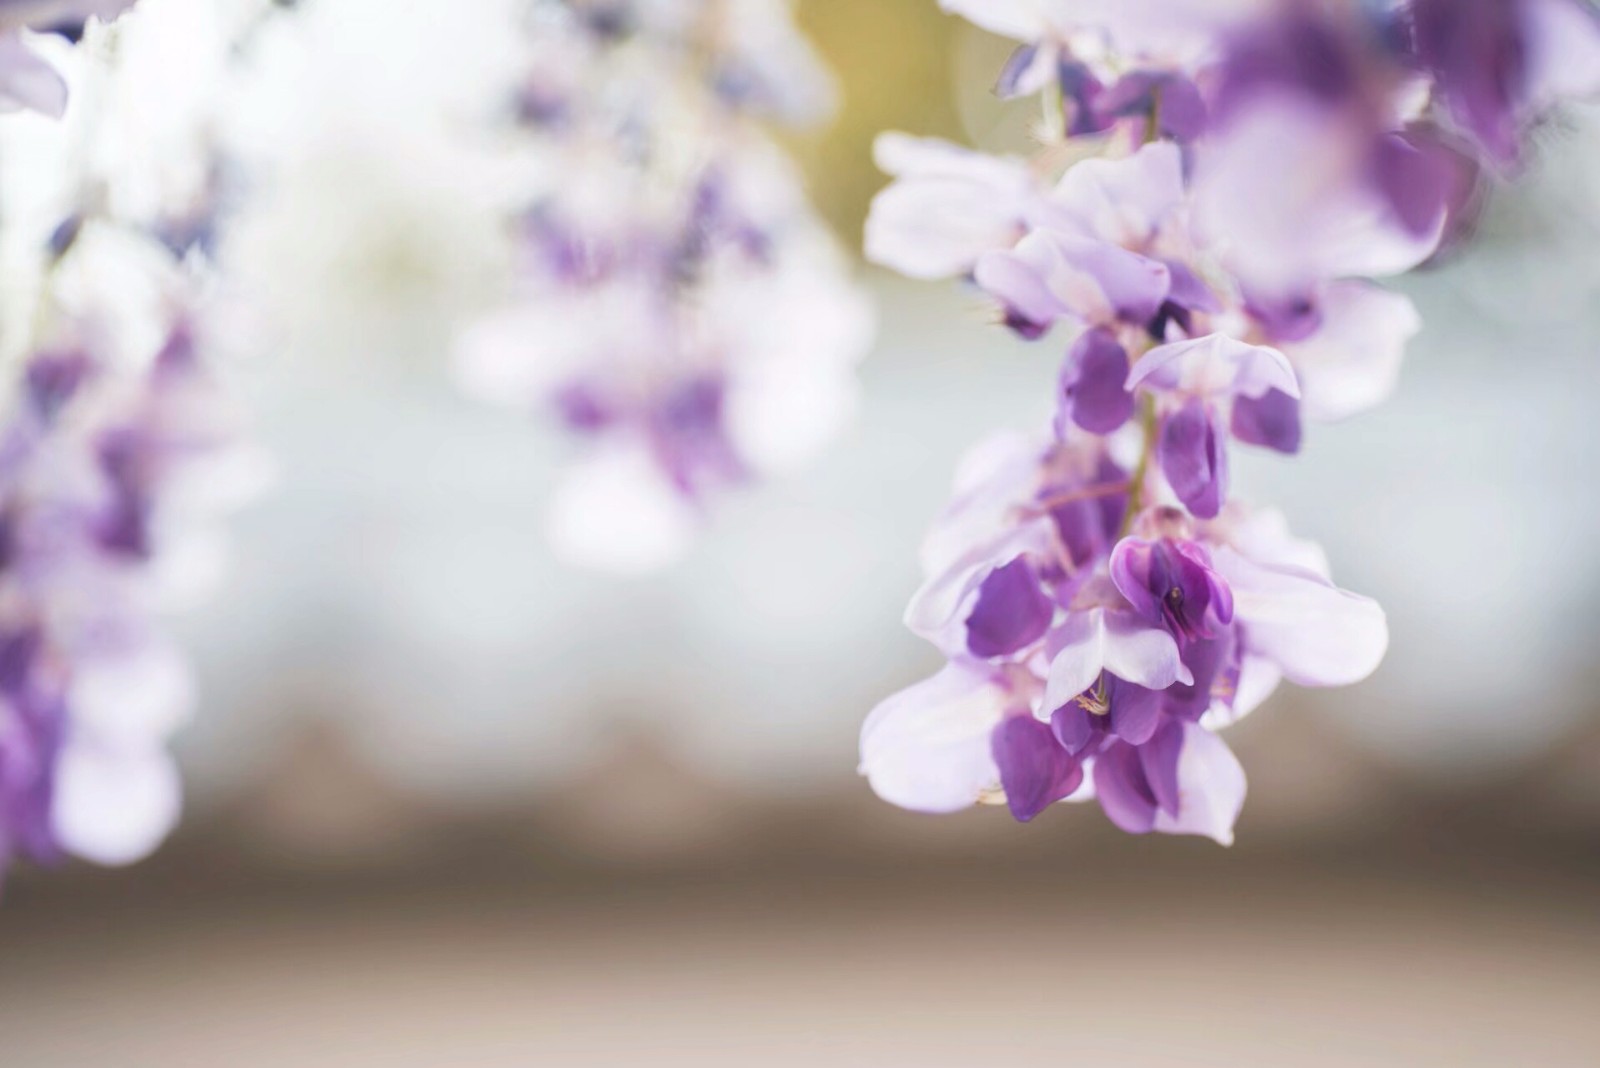 紫藤图片_风景花卉的紫藤图片大全 - 花卉网